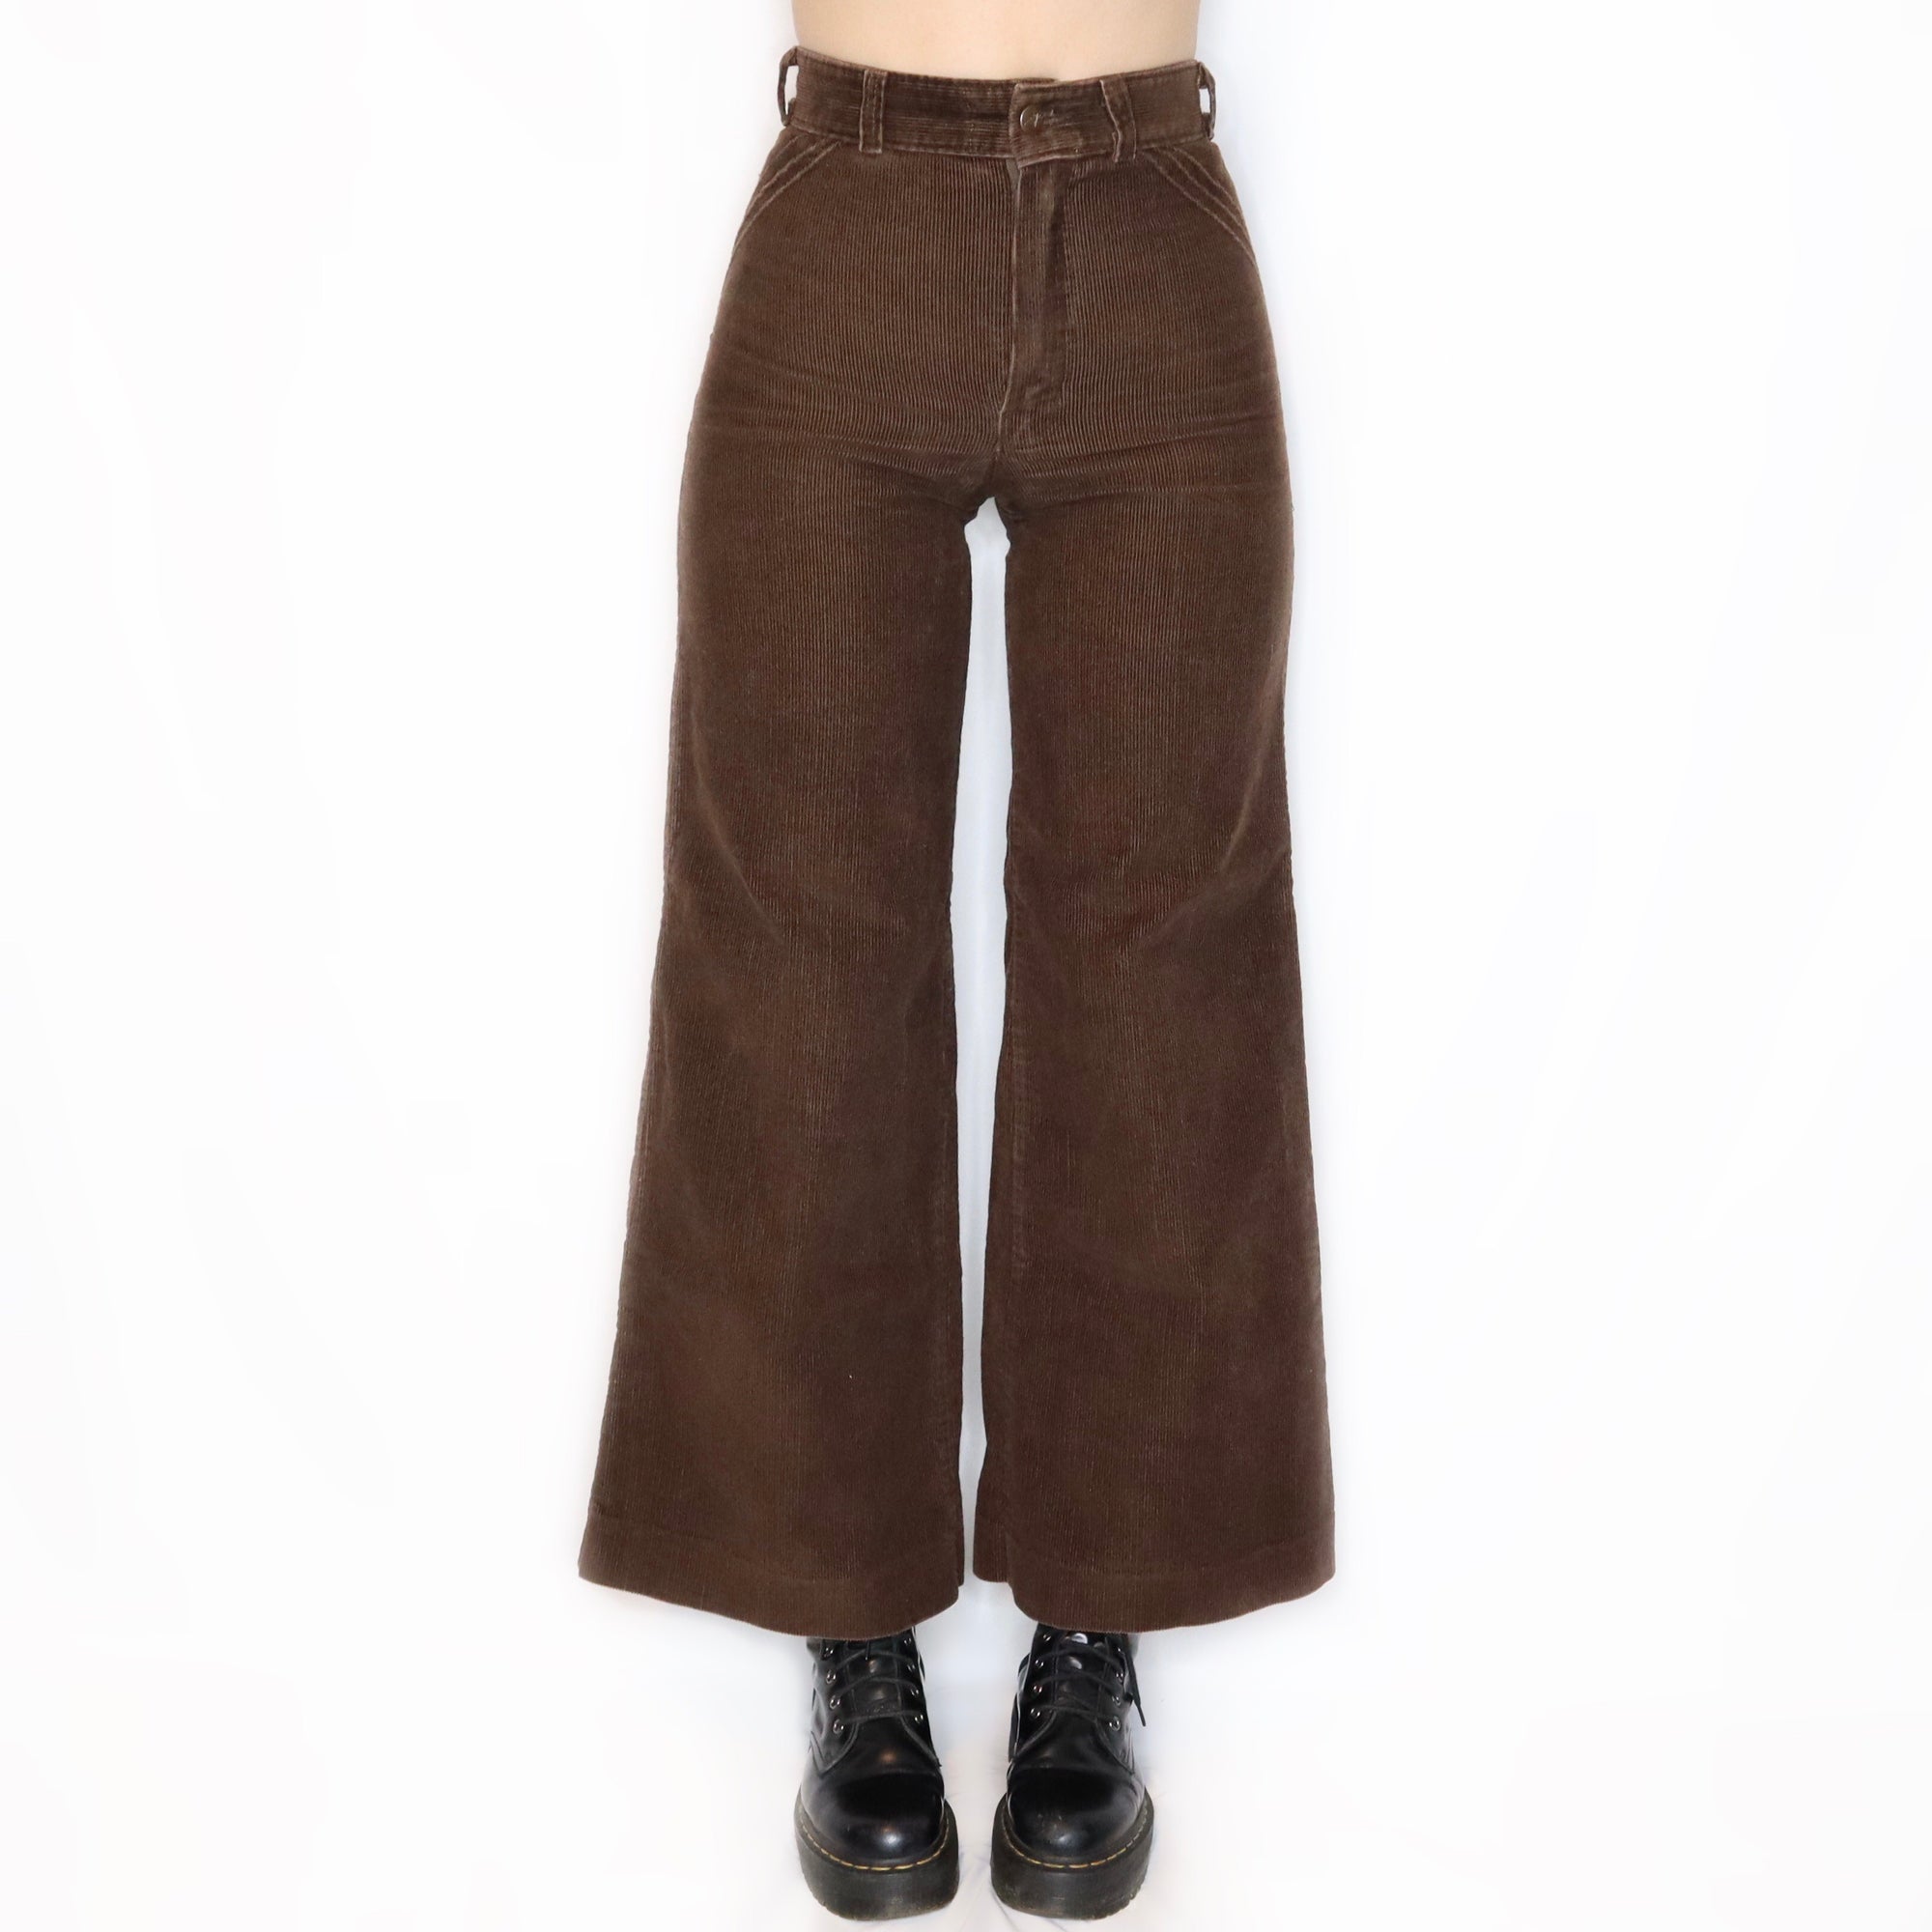 Rare Vintage 70s Brown Corduroy High Waisted Bell Bottom Pants